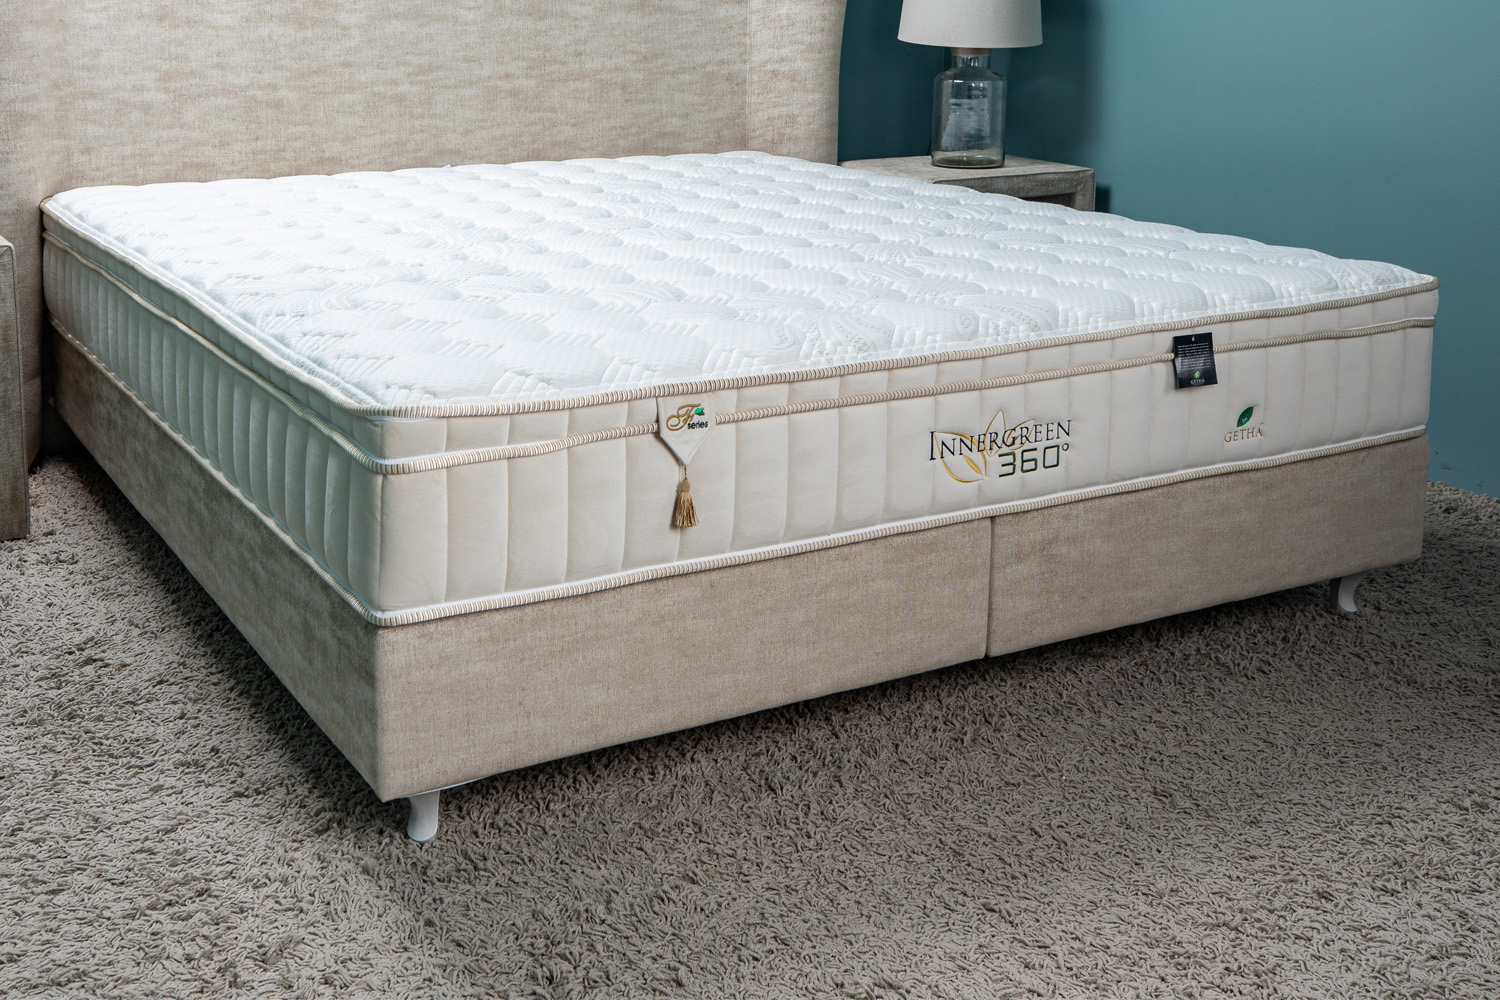 getha biocare mattress review